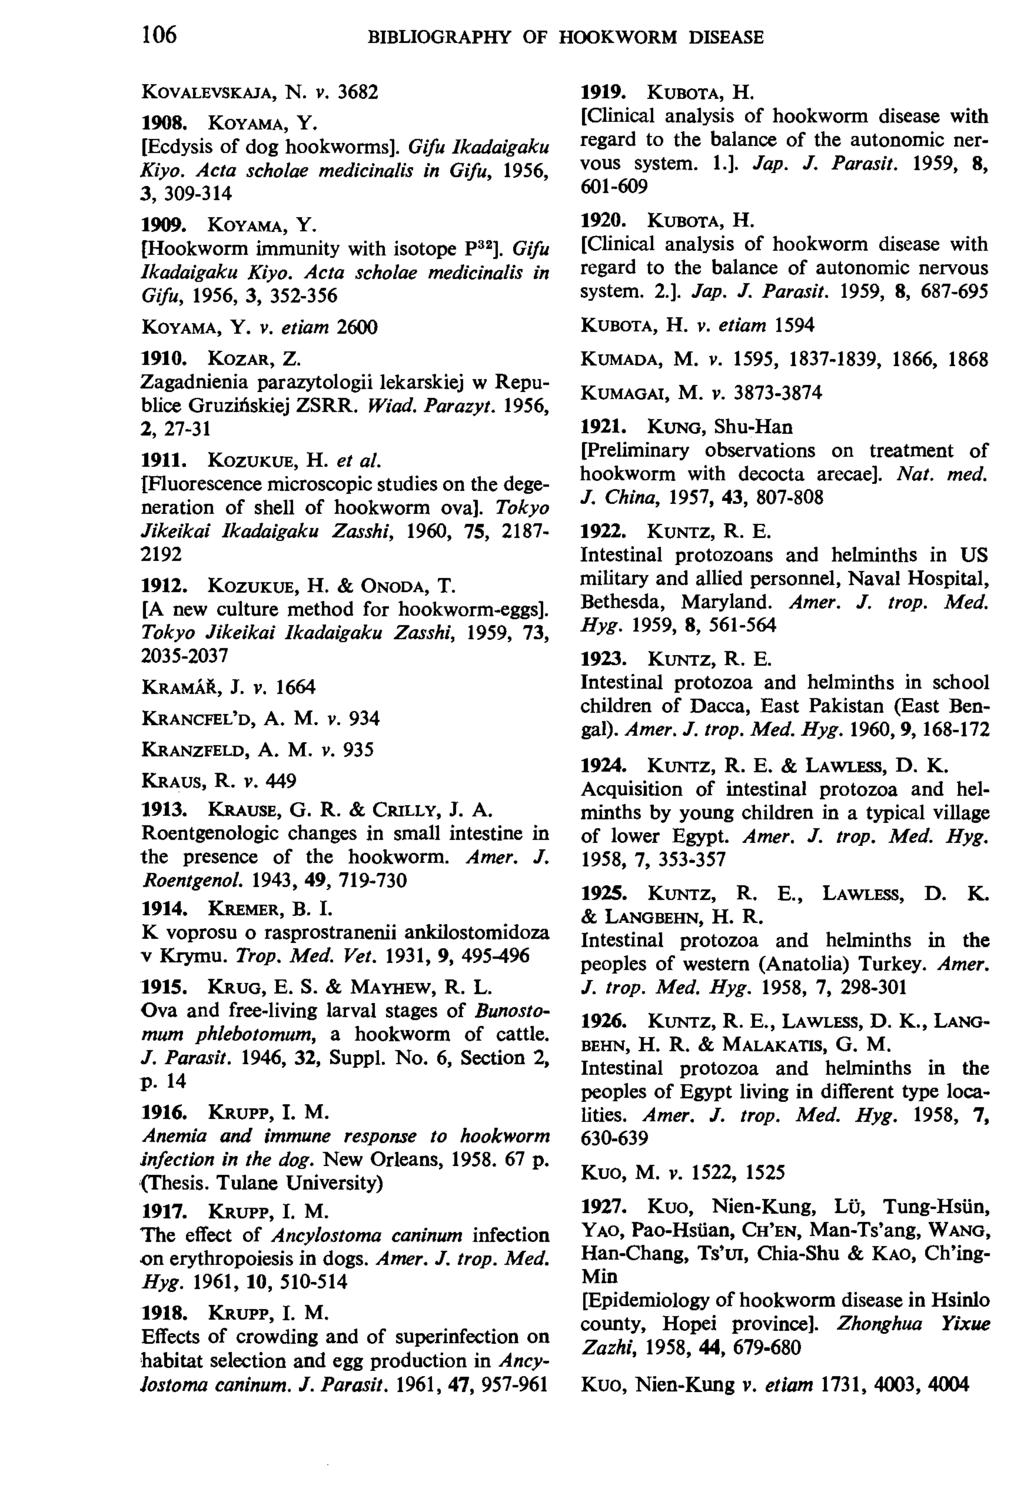 106 BIBLIOGRAPHY OF HOOKWORM DISEASE KOVALEVSKAJA, N. V. 3682 1908. KOYAMA, Y. [Ecdysis of dog bookworms]. Gifu Ikadaigaku Kiyo. Acta scholae medicinalis in Gifu, 1956, 3, 309-314 1909. KOYAMA, Y. [Hookworm immunity with isotope P 32 ].